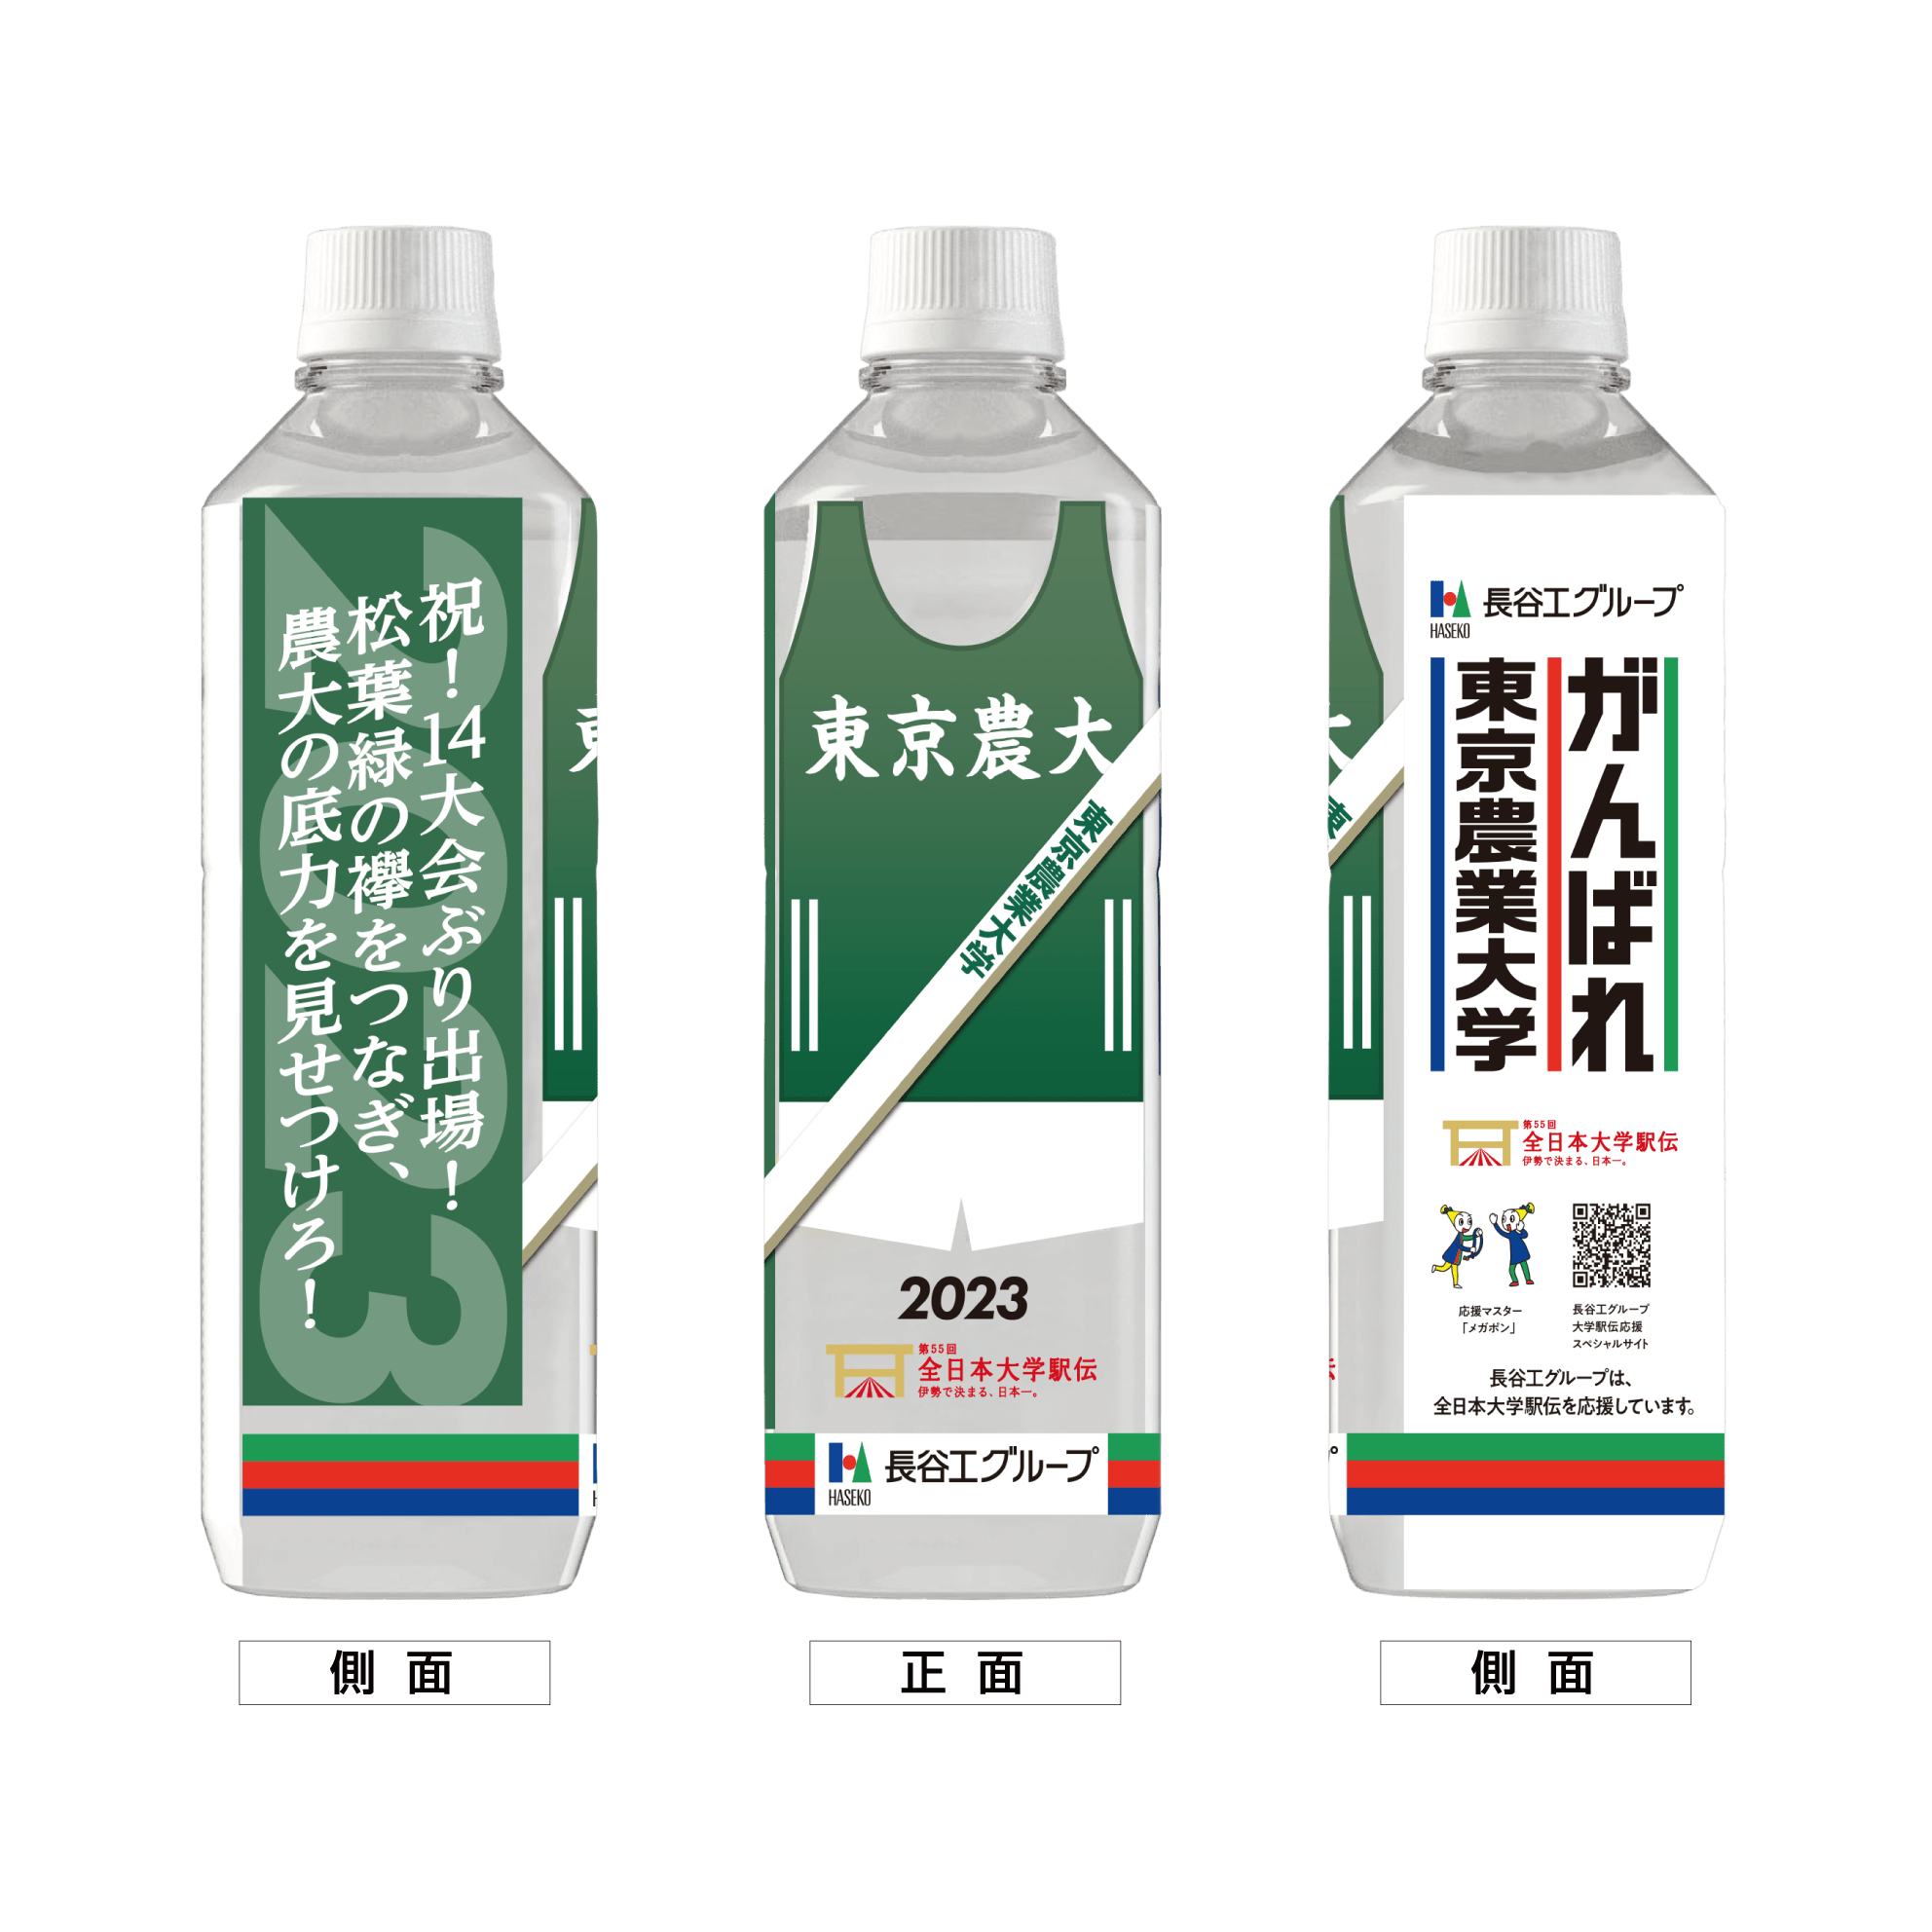 東京農業大学 ボトルデザイン